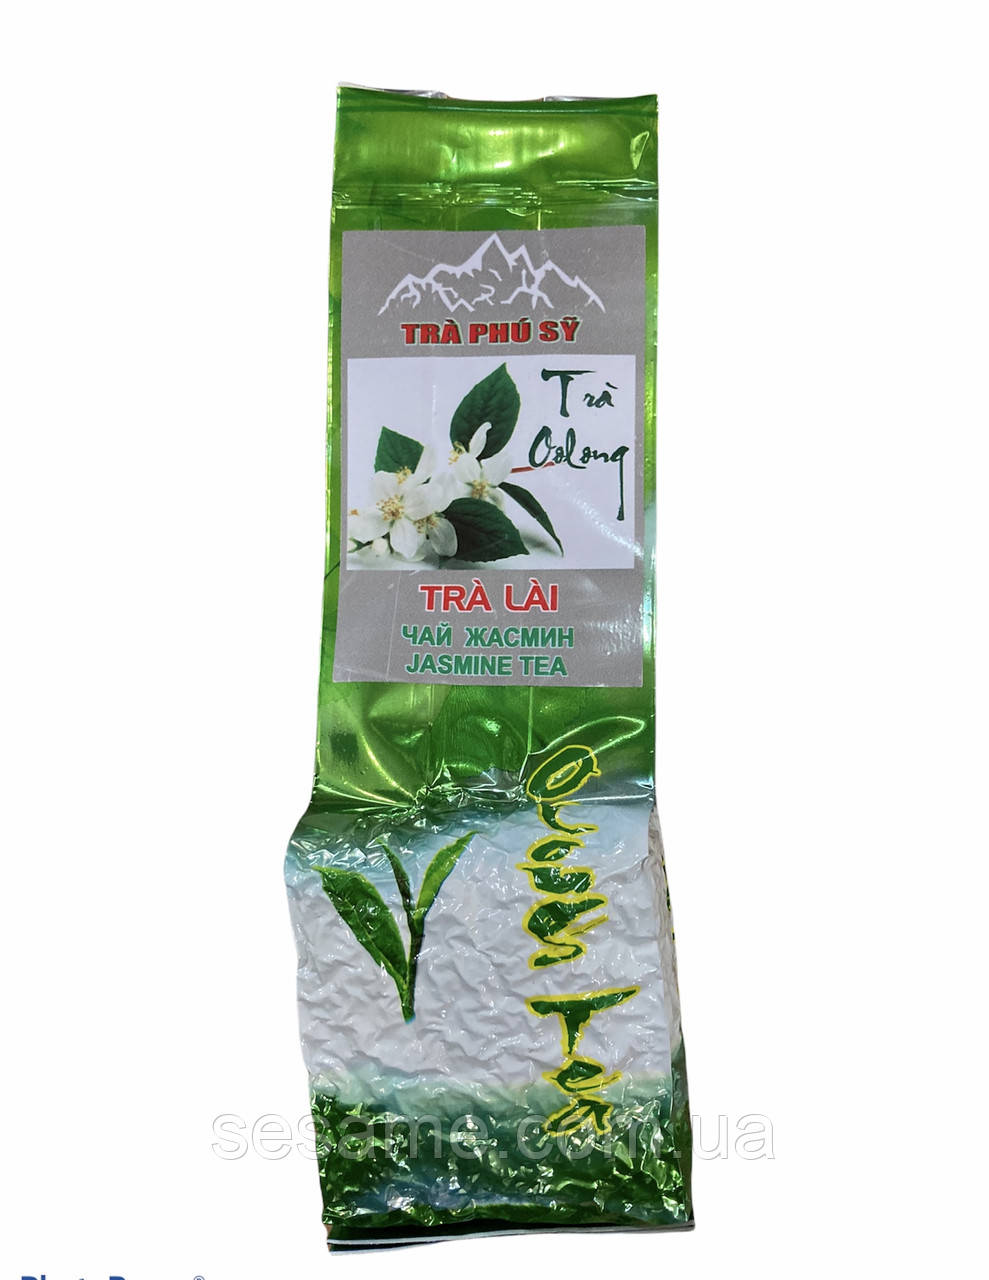 Чай улун чай із Жасмином Tra Phu Sy Premium Jasmin Tea Oolong 100г